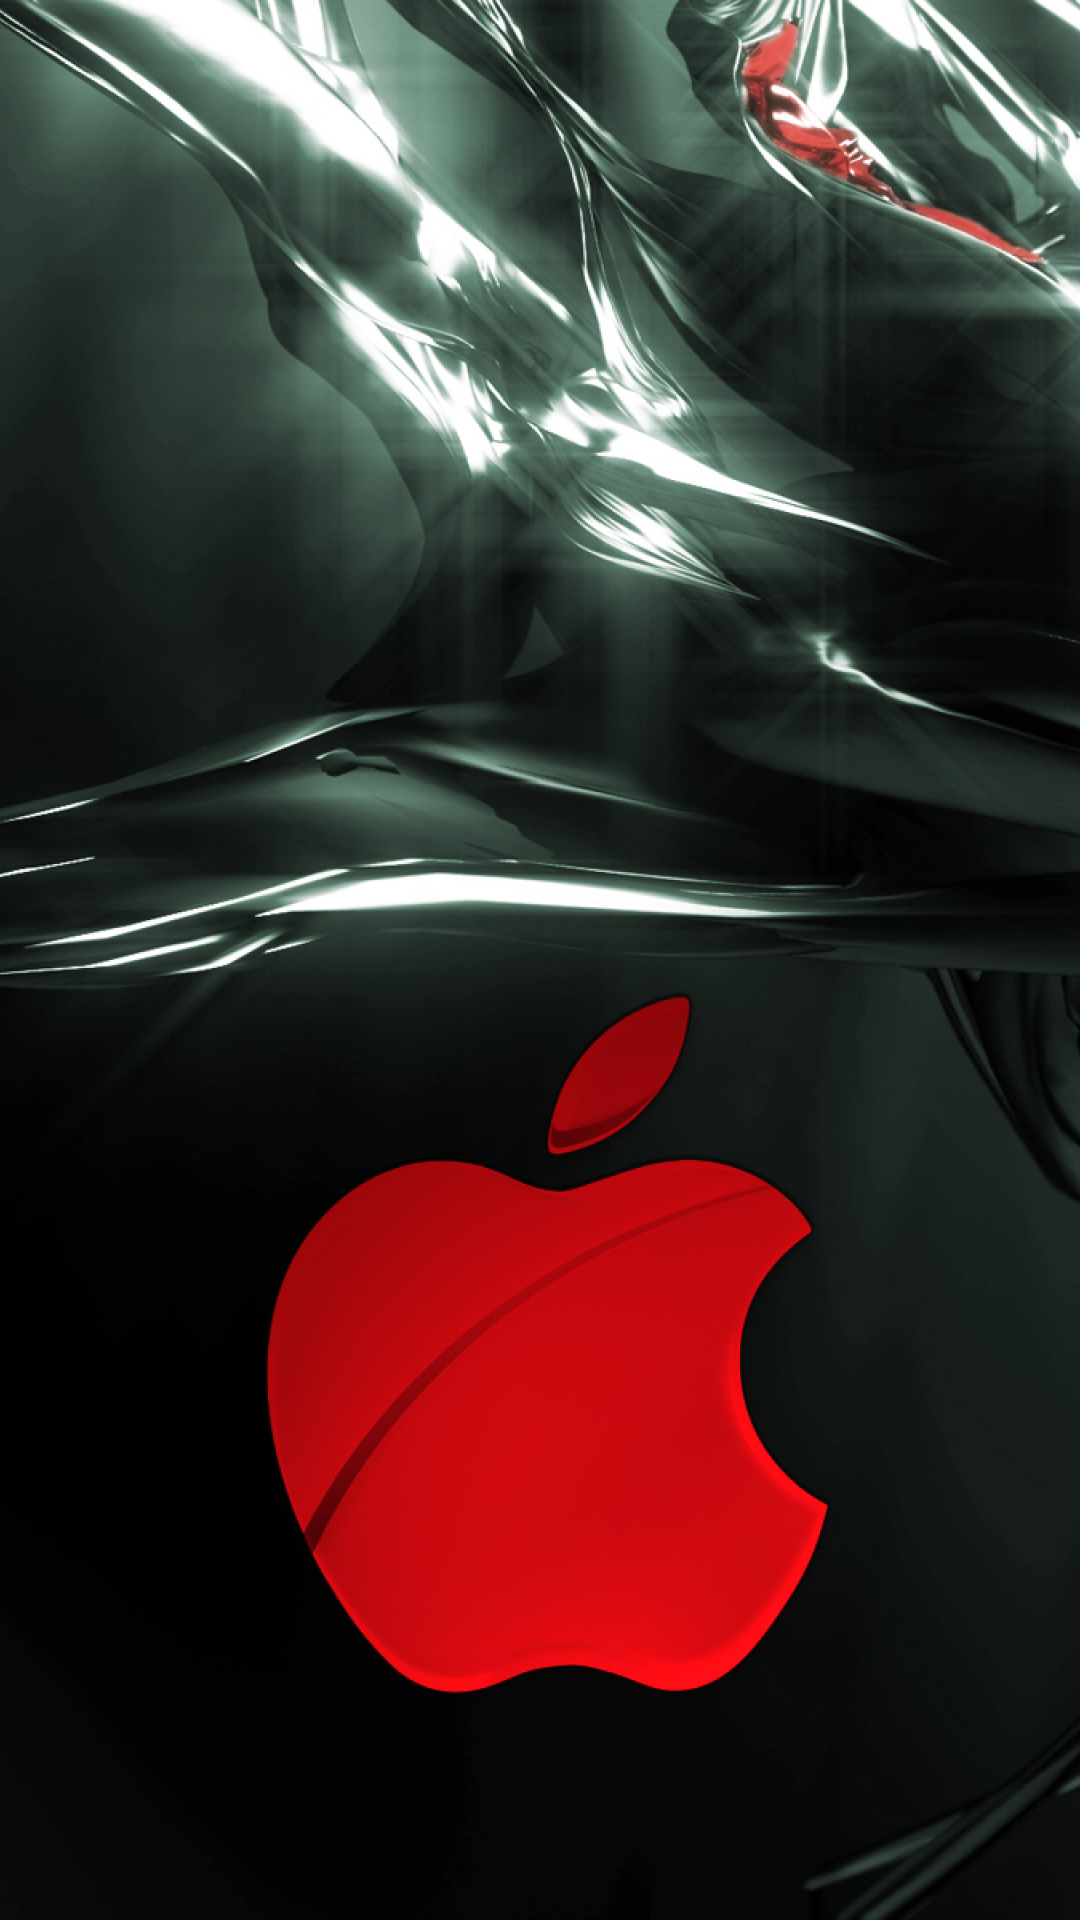 Apple Emblem wallpaper 1080x1920